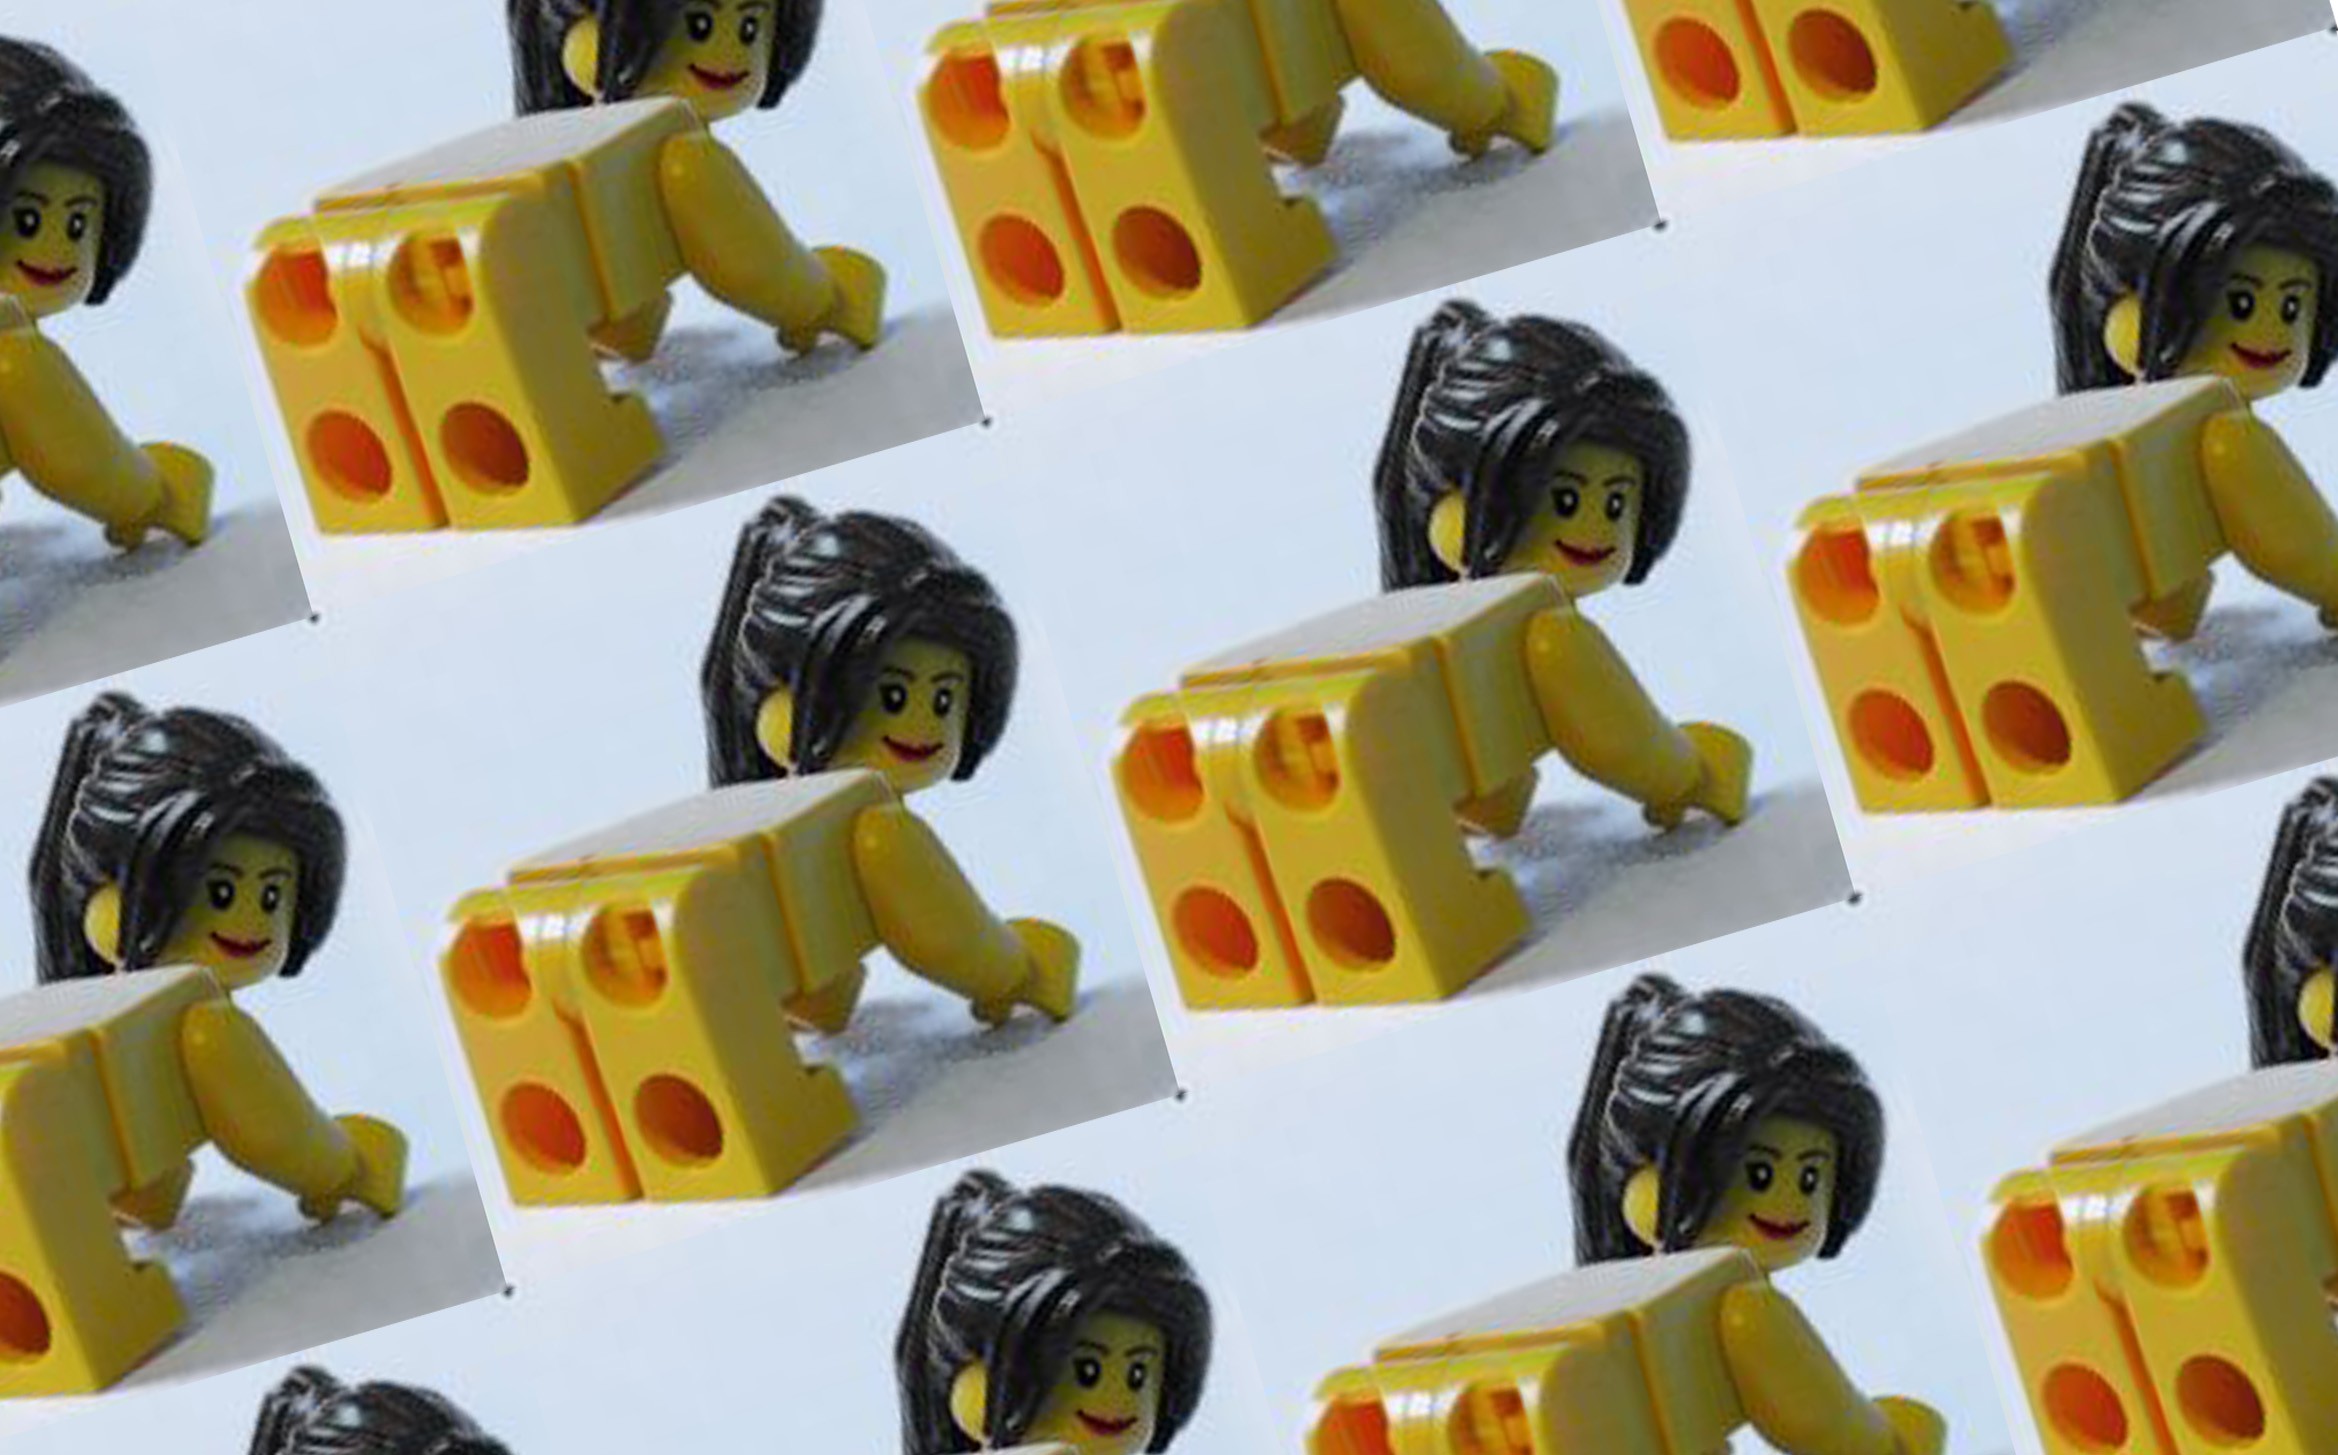 изображения Лего » Порно фото бесплатно, без регистрации и смс